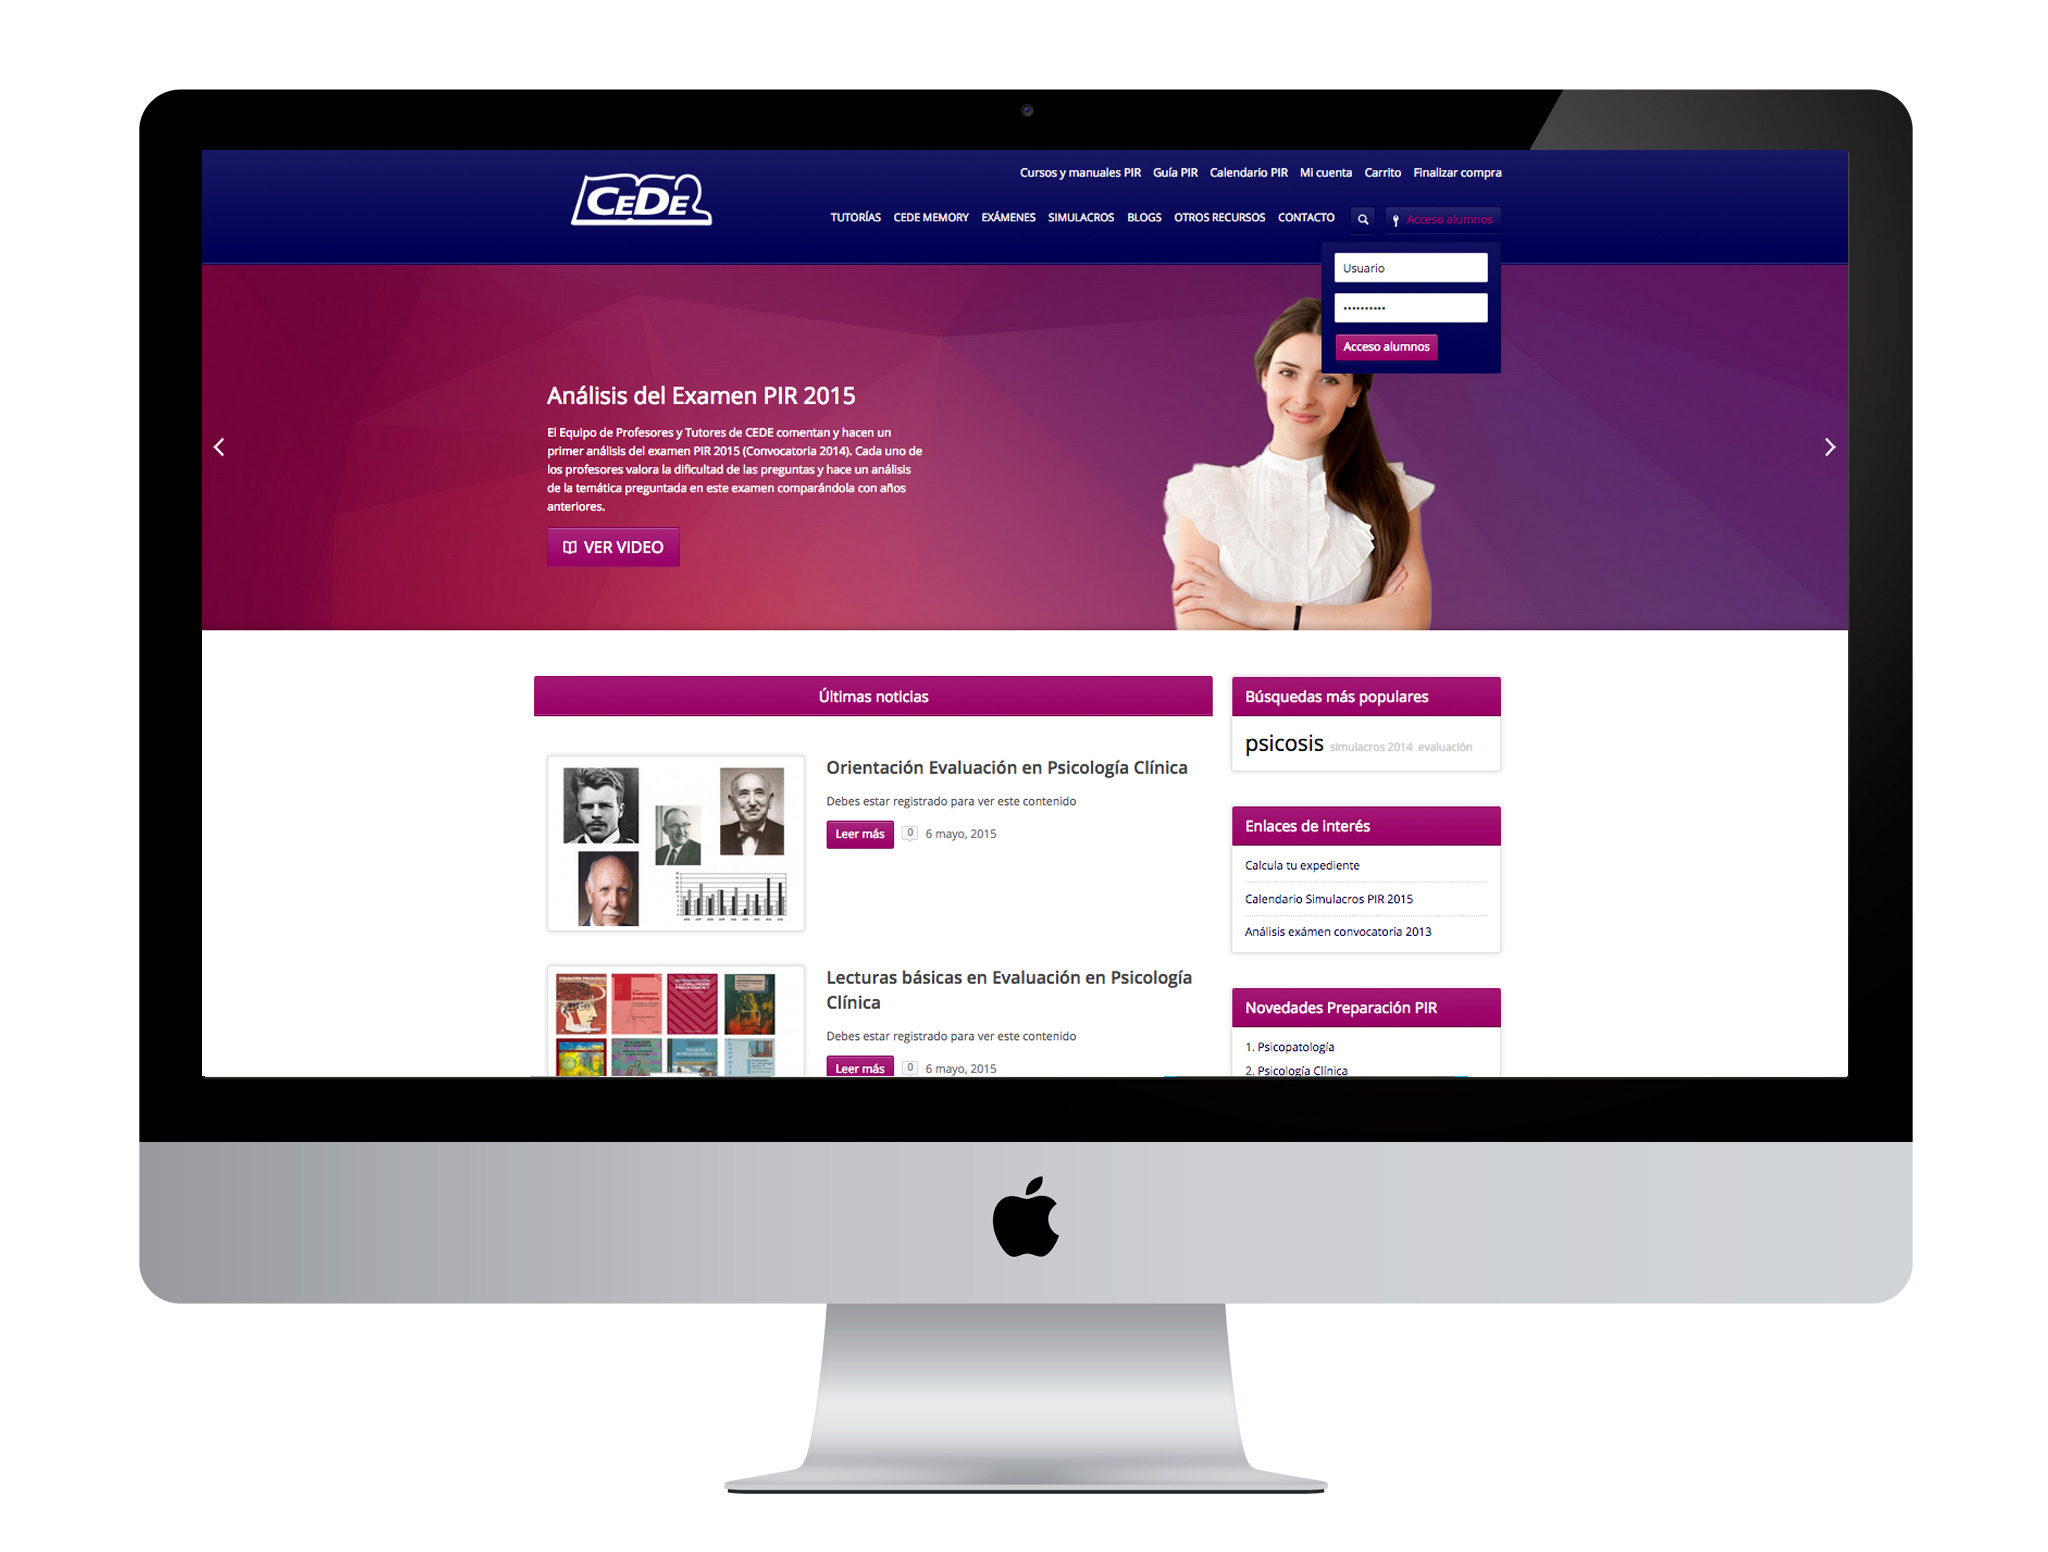 Diseño gráfico y web realizado por agencia de marketing online Softdream